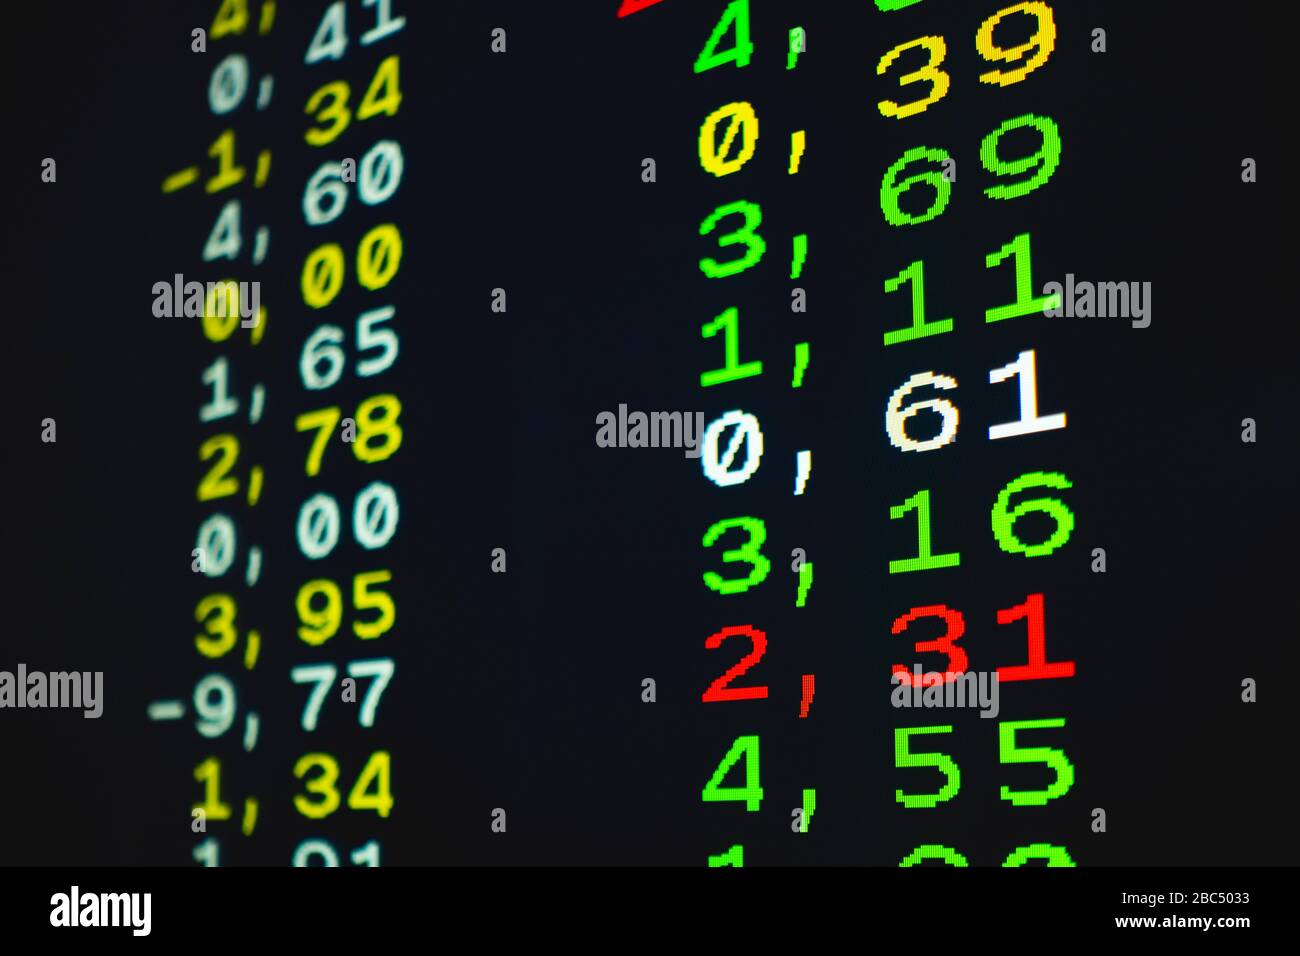 Nahaufnahme von Erhöhungen und Verlusten bei den Aktienwerten an der Börse, die im Videotext gezeigt werden Stockfoto